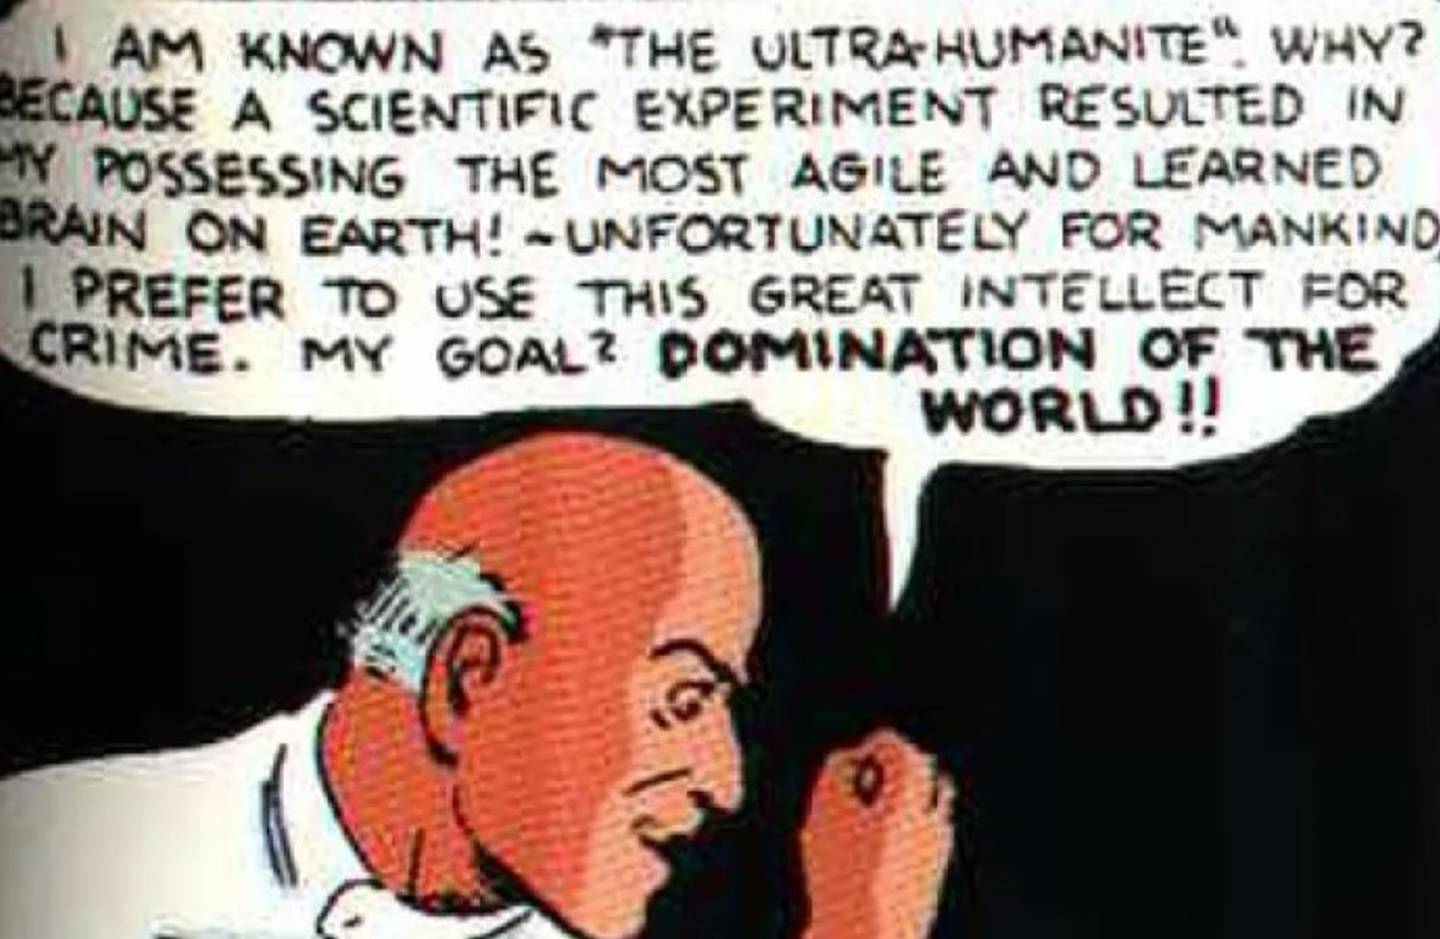 Una imagen de Ultra-Humanidad, el primer villano de Superman, físicamente parecido al Profesor X de los X-Men.